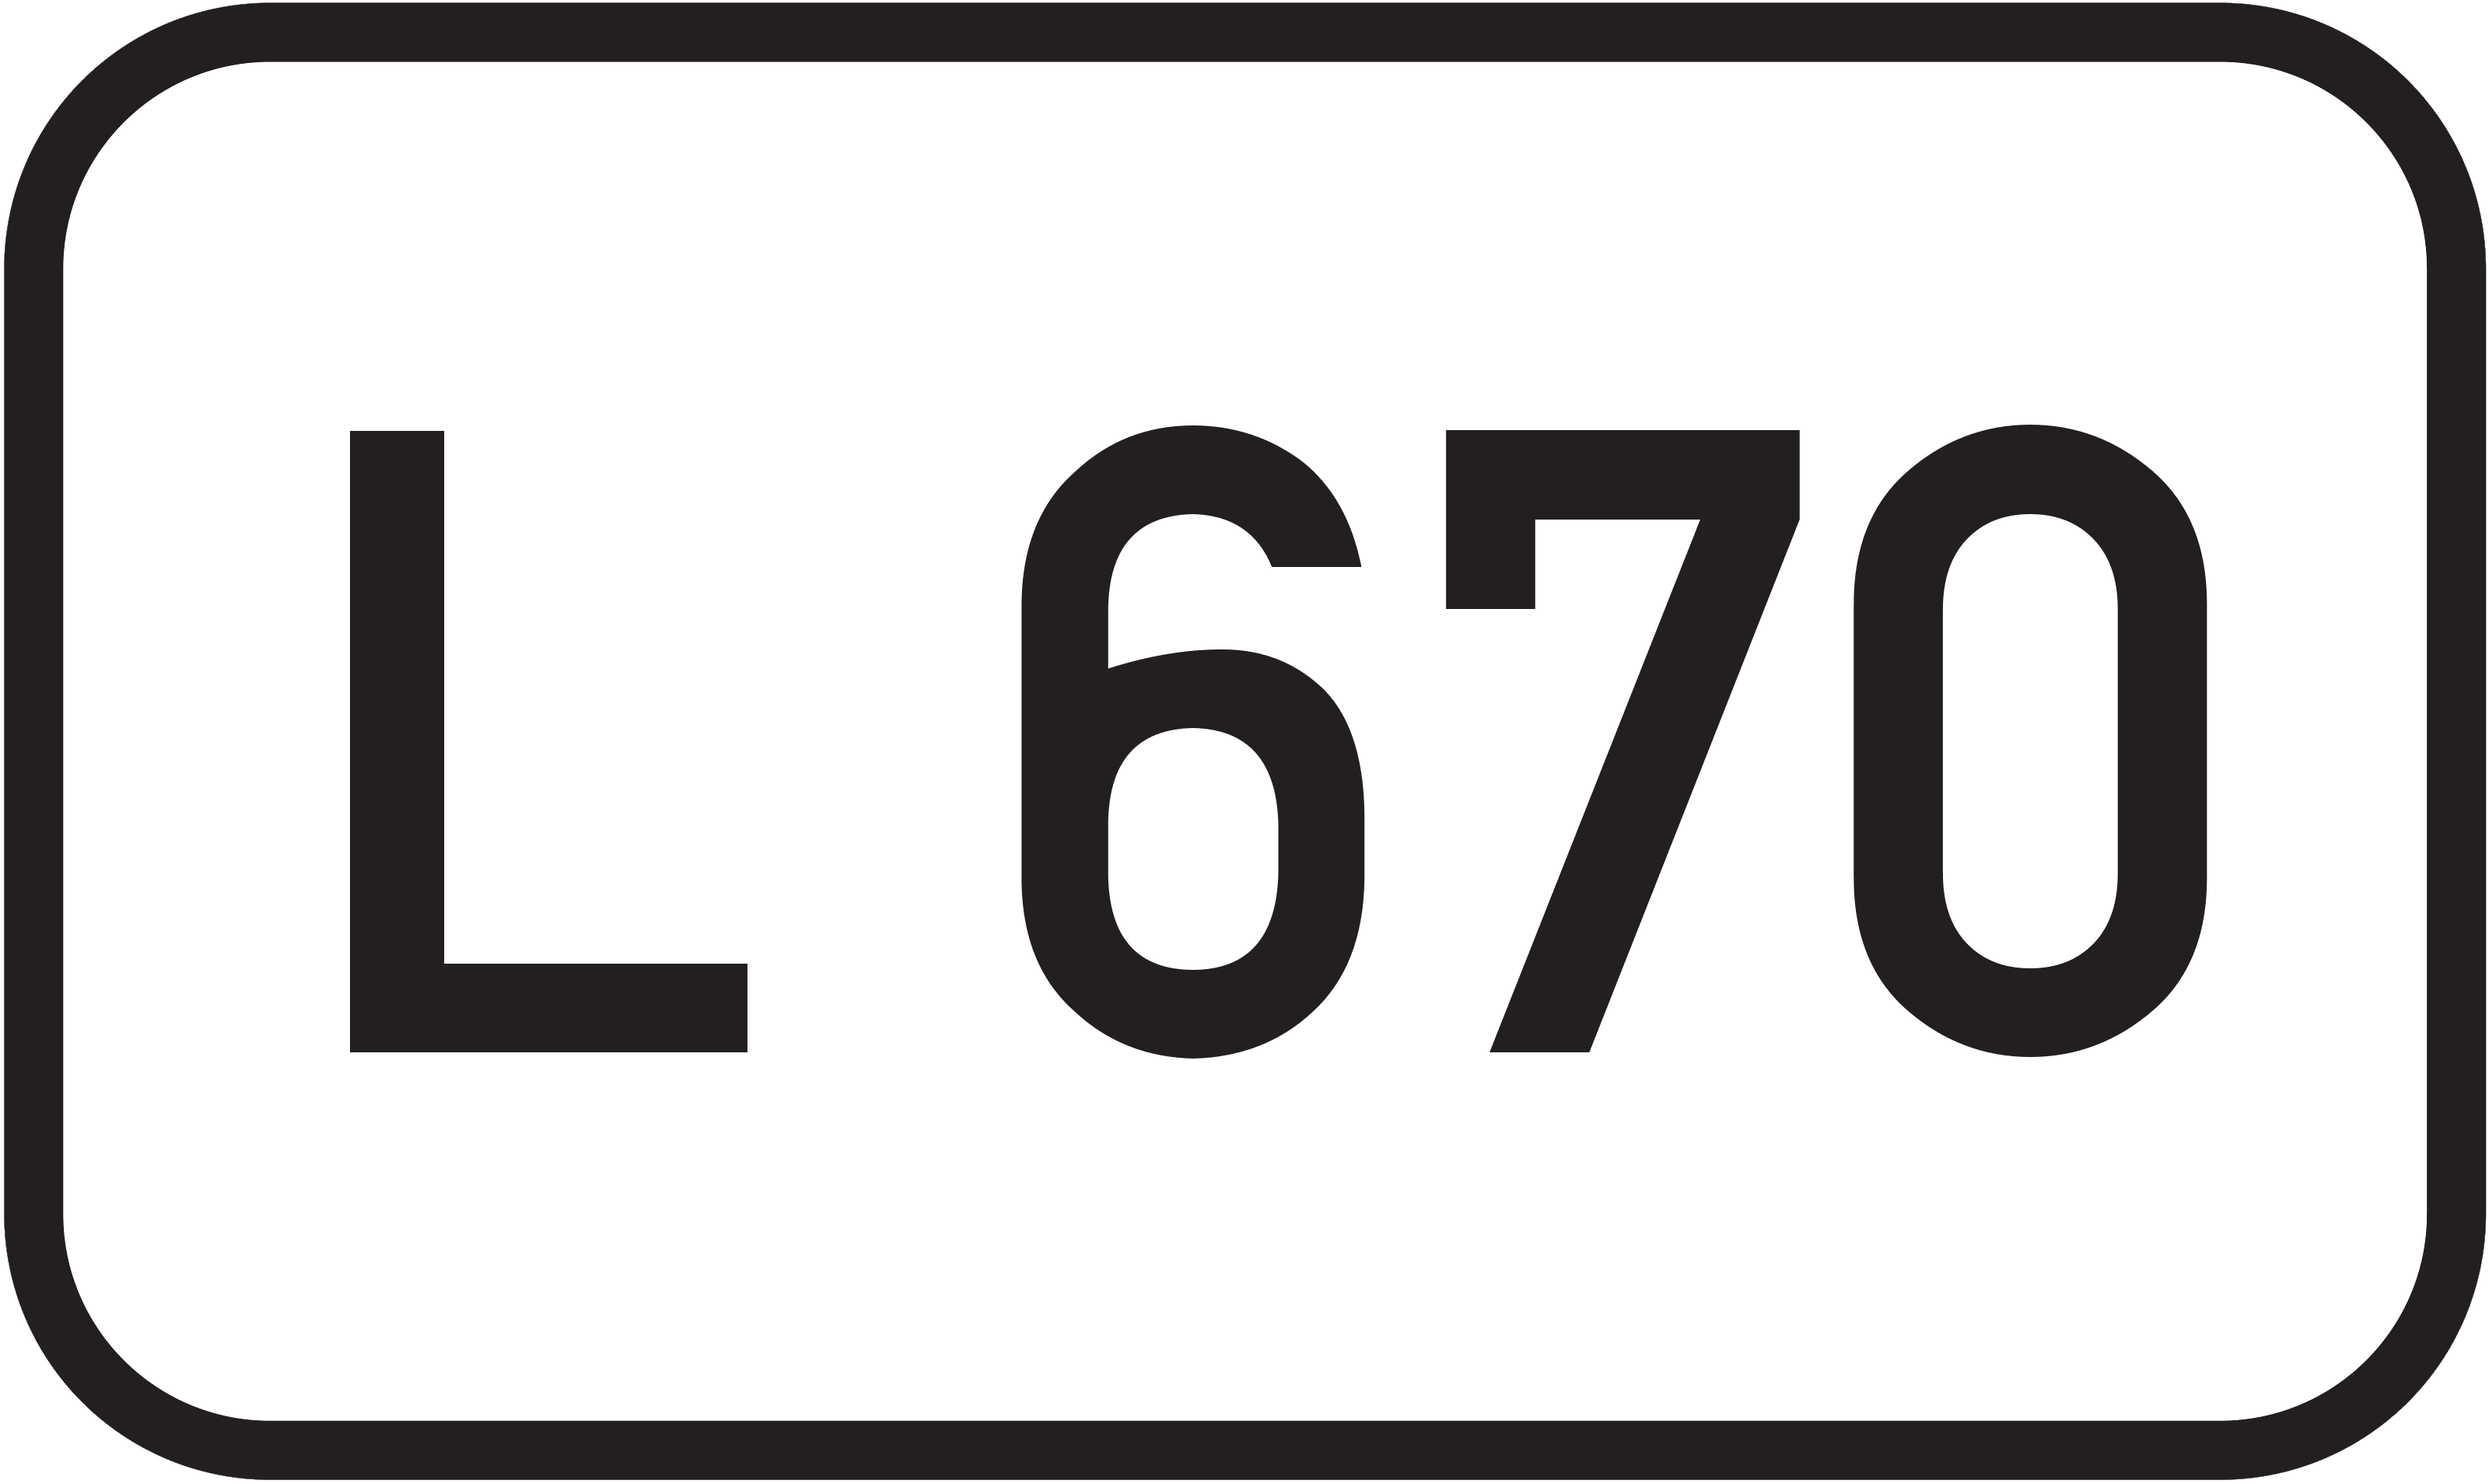 Landesstraße L 670